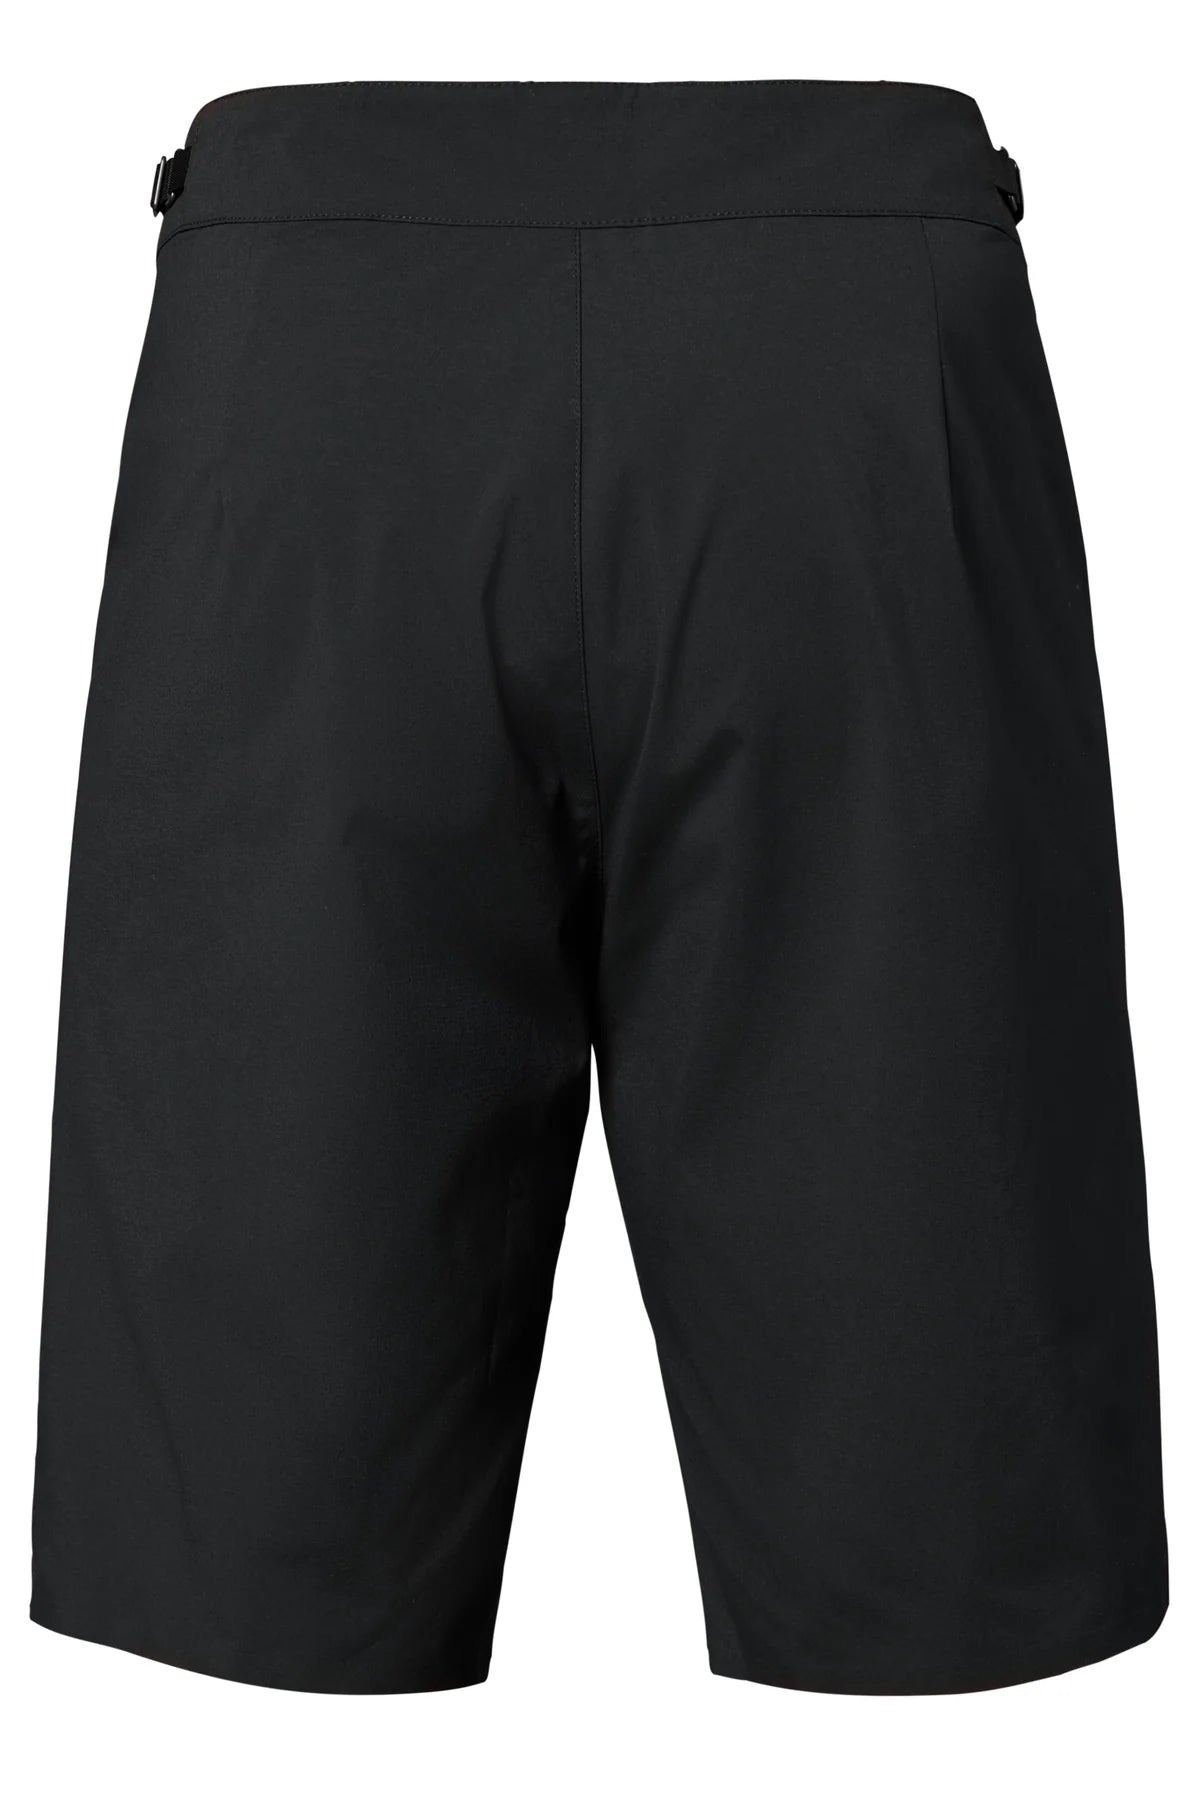 Flylow Laser Short - Men's shorts Black back